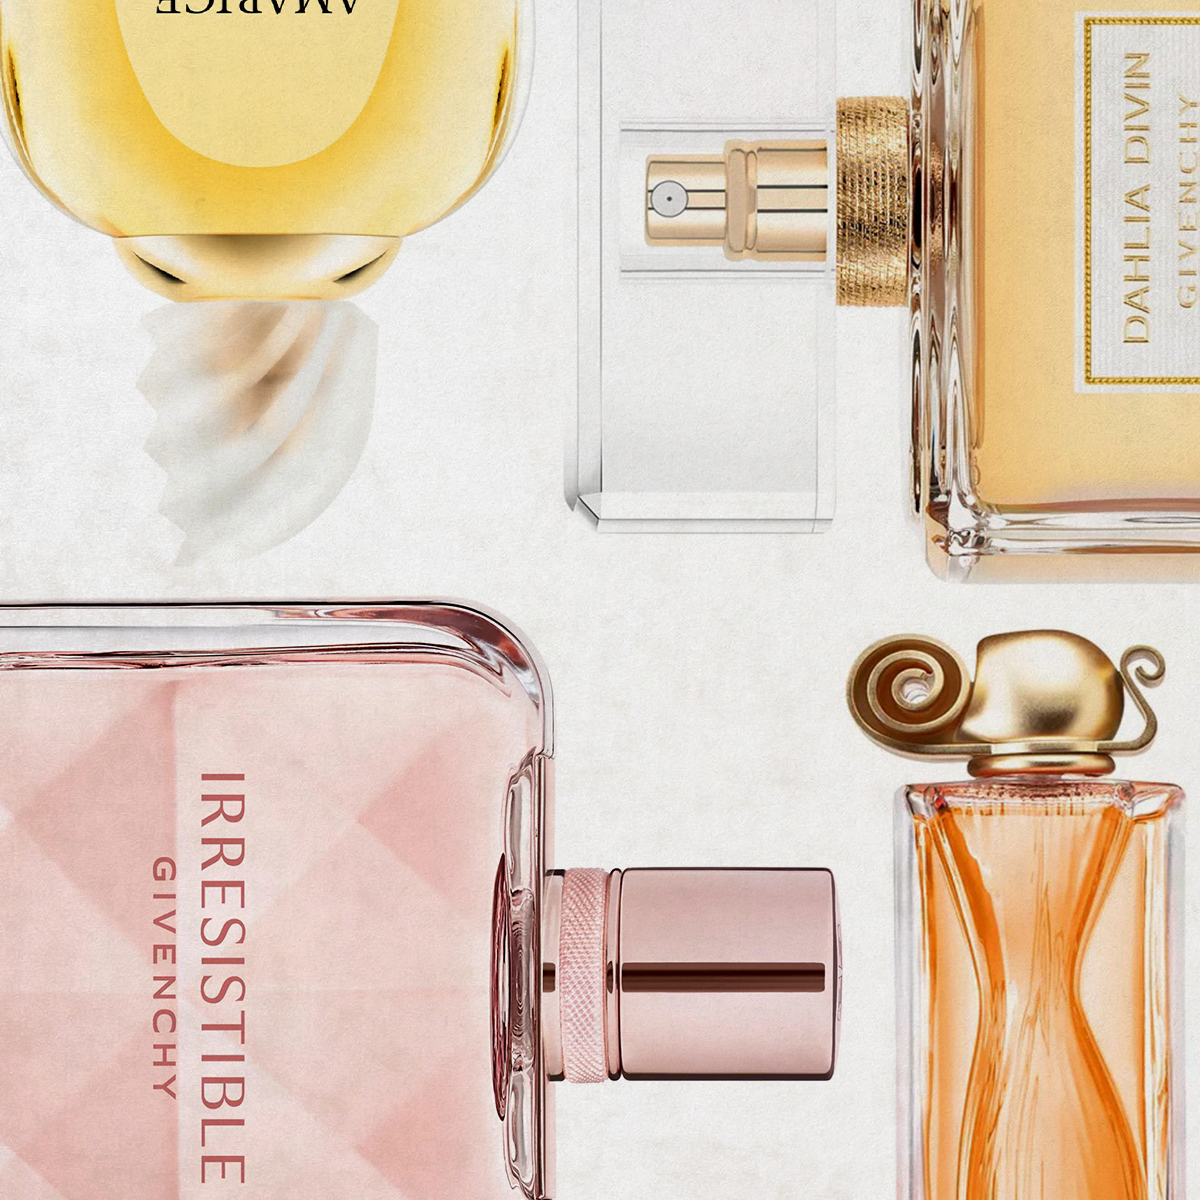 Best Givenchy Perfume 2016 Online | website.jkuat.ac.ke